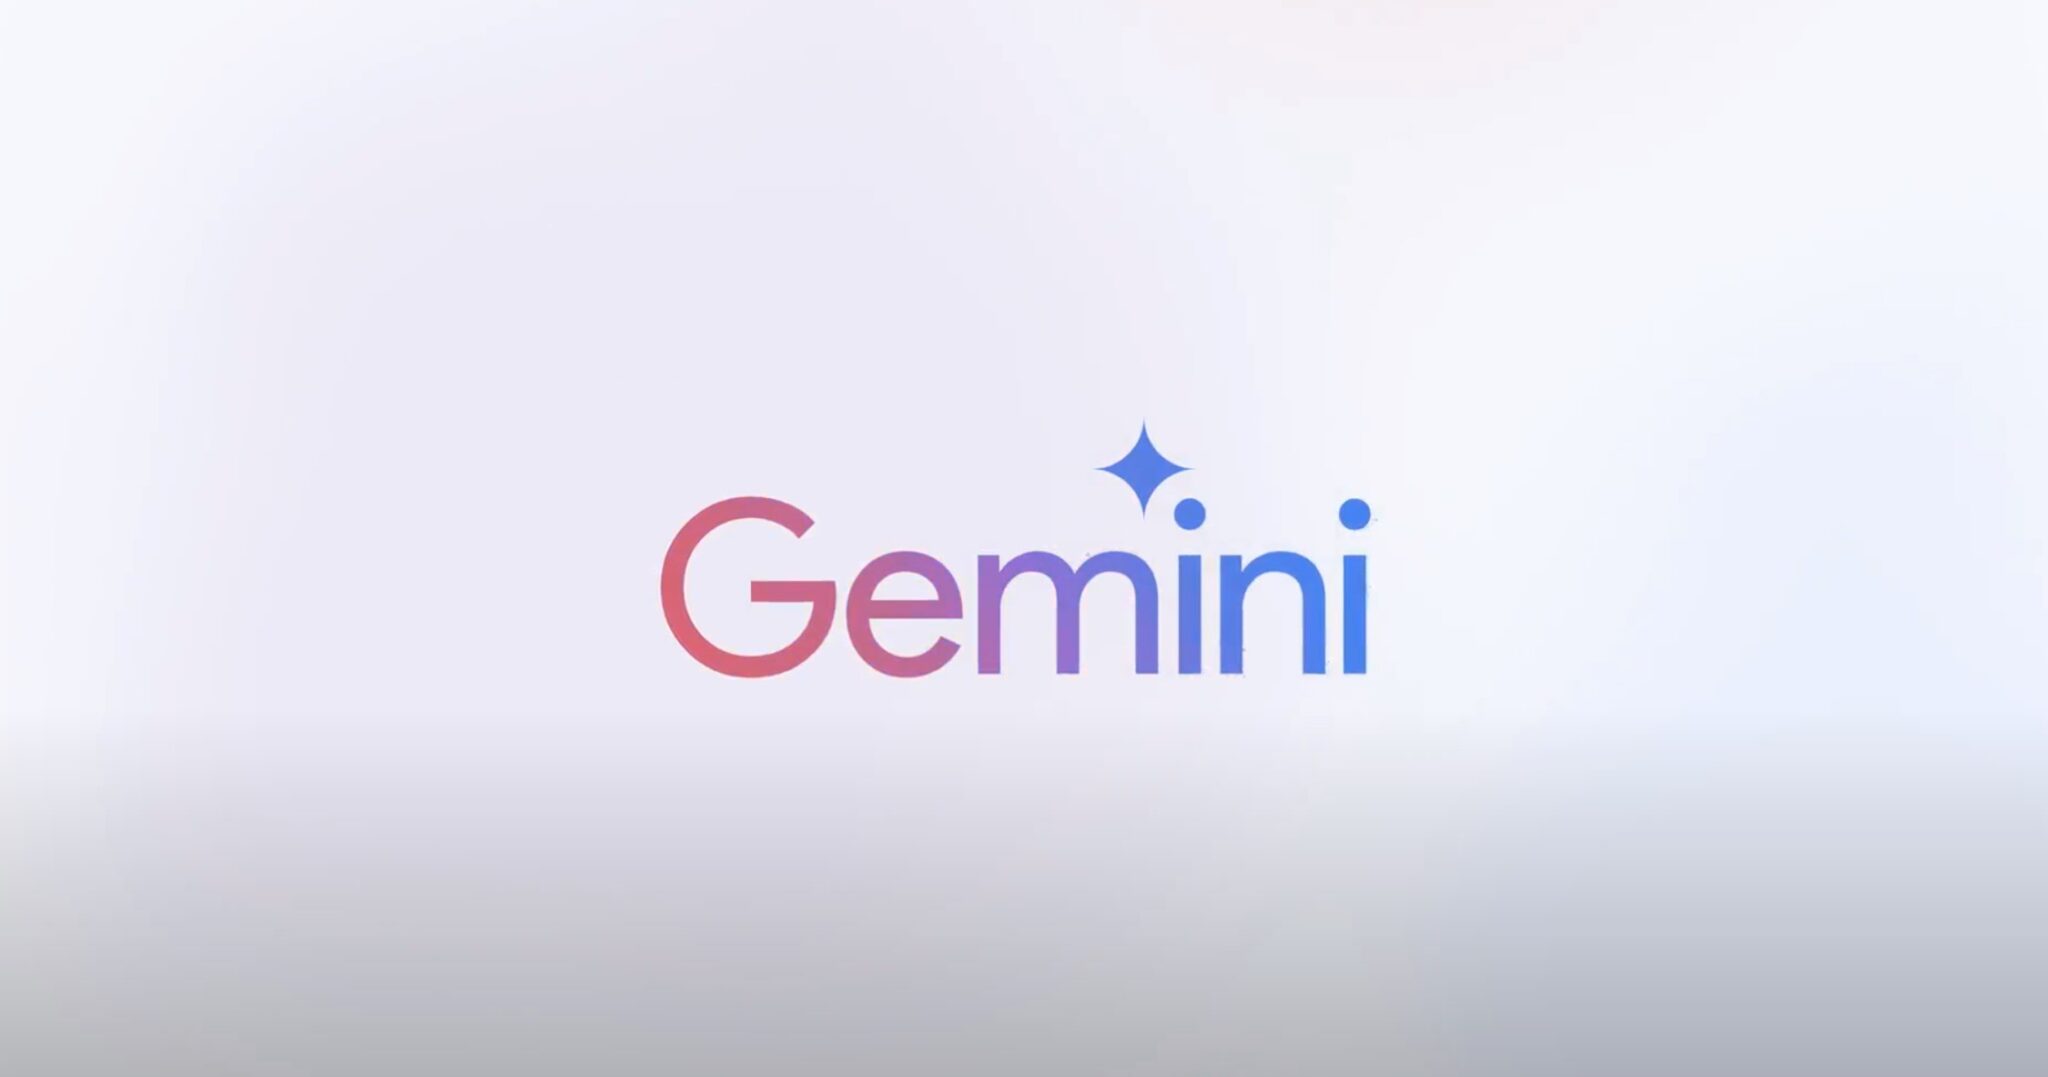 Bard cambia su nombre a Gemini, tendrá una aplicación dedicada y una versión avanzada con suscripción